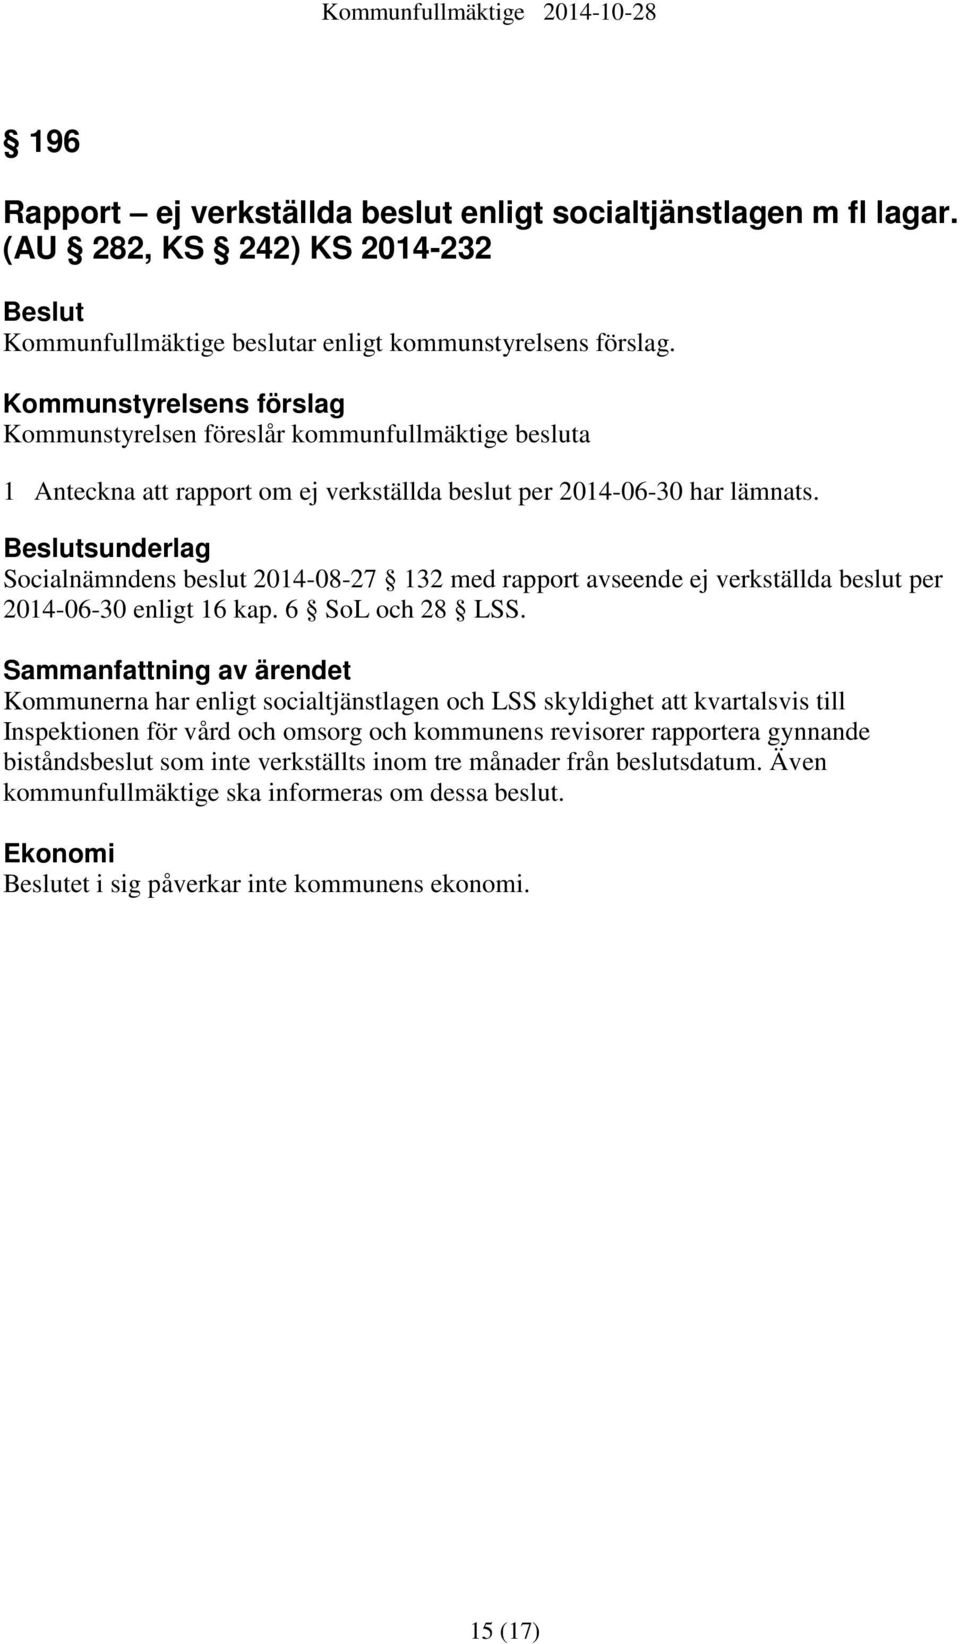 Beslutsunderlag Socialnämndens beslut 2014-08-27 132 med rapport avseende ej verkställda beslut per 2014-06-30 enligt 16 kap. 6 SoL och 28 LSS.